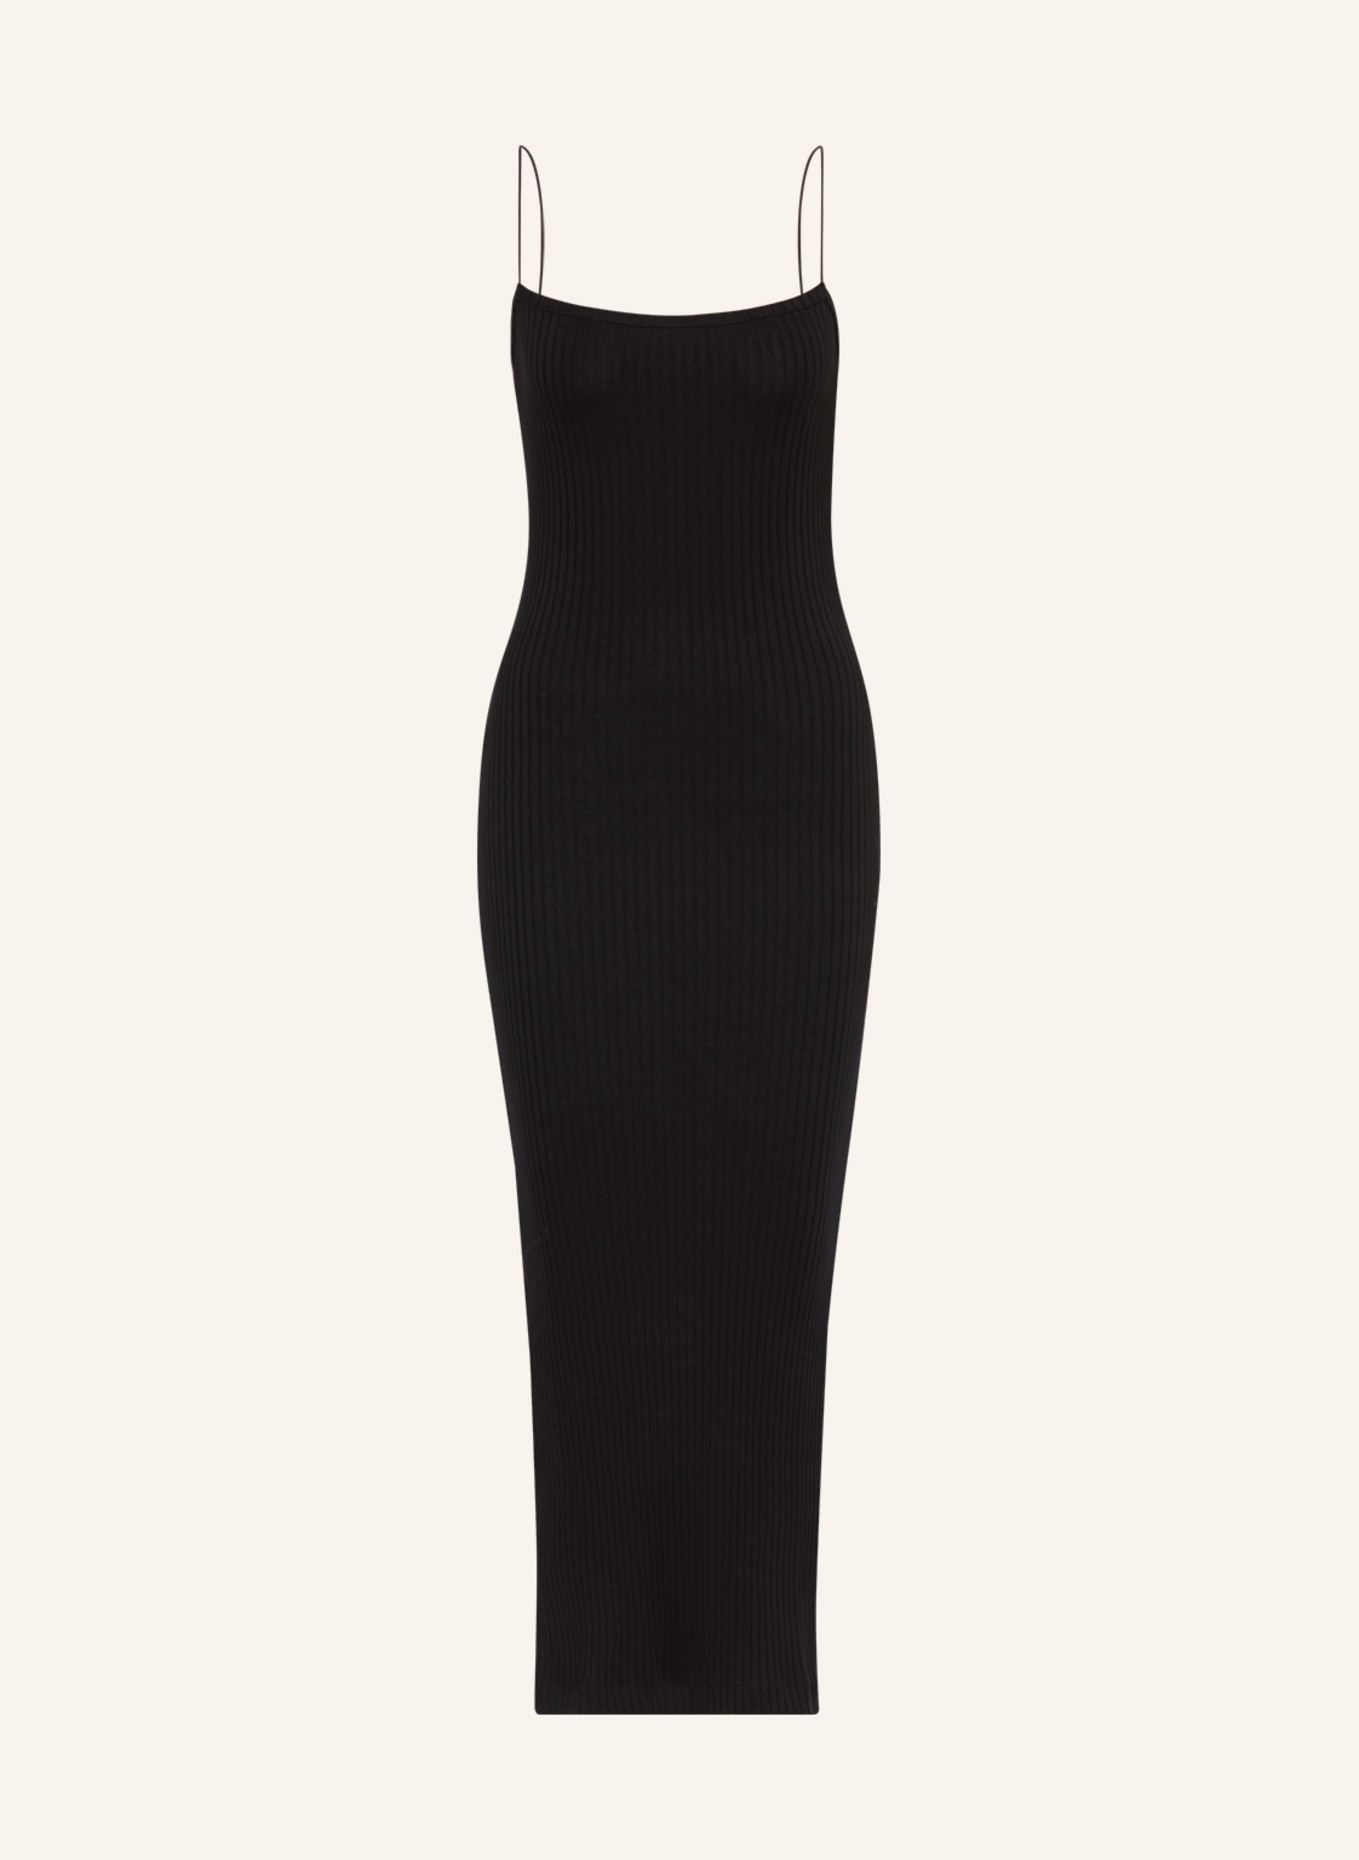 HELMUT LANG Knit dress, Color: BLACK (Image 1)